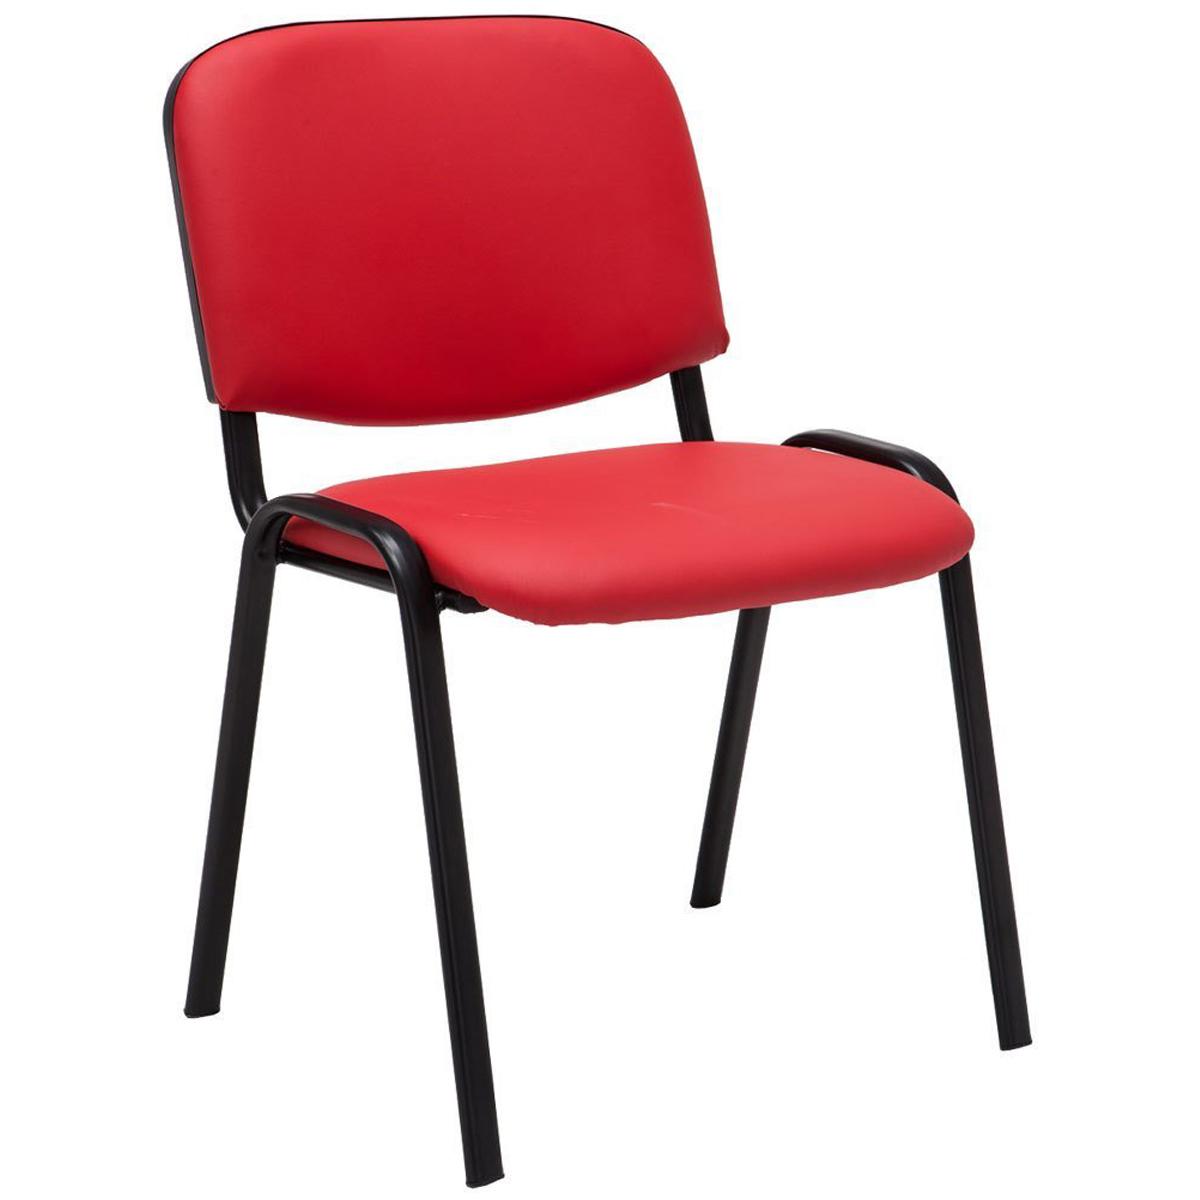 Cadeira de Visita MOBY PELE, Confortável e Prática, Pernas Pretas, Cor Vermelho